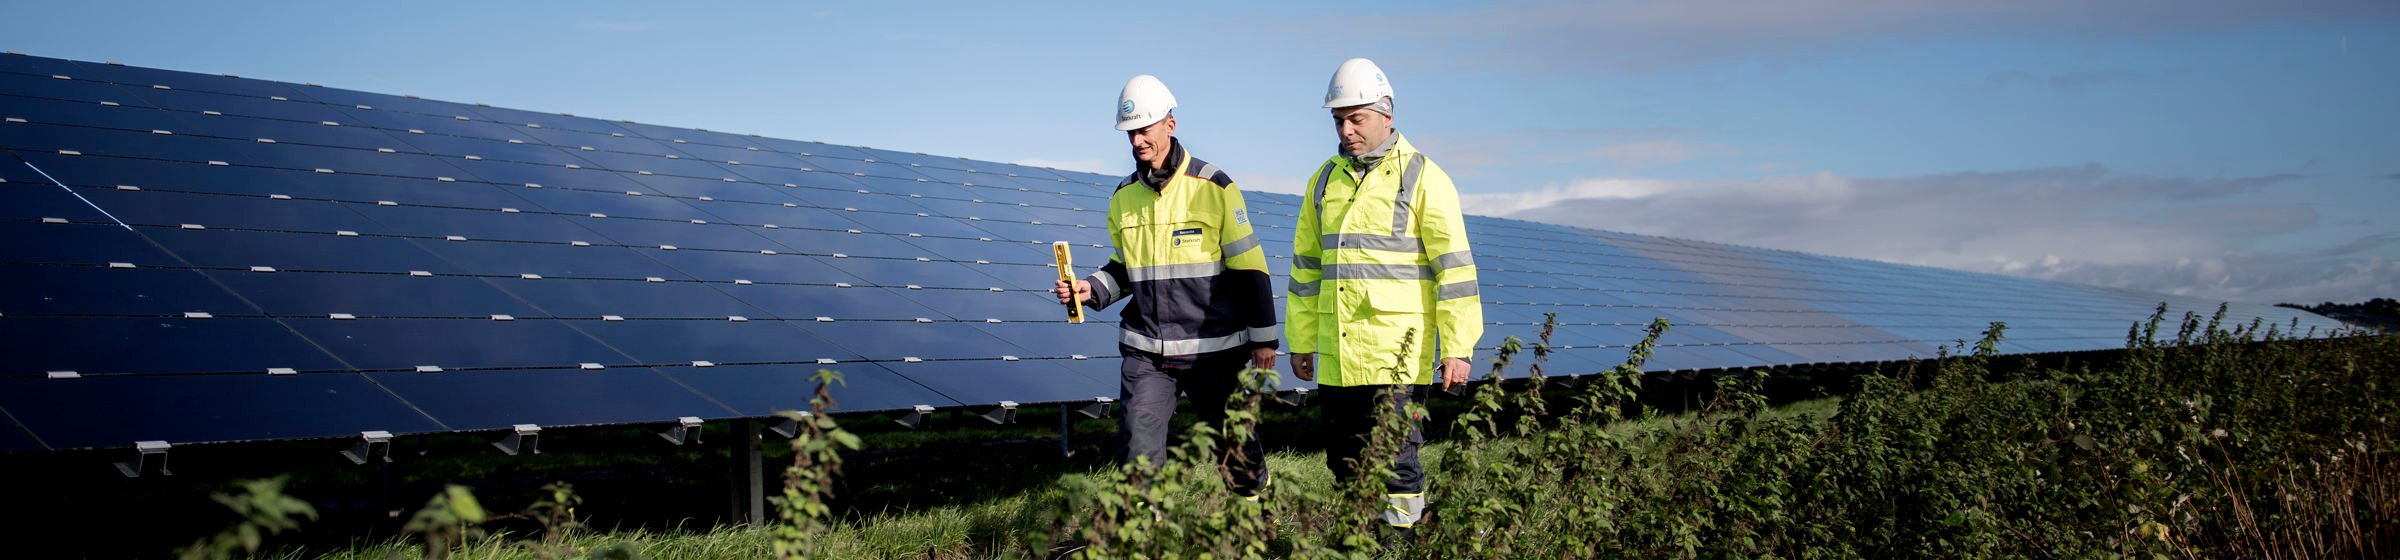 Zwei Mitarbeiter vor Solarpark